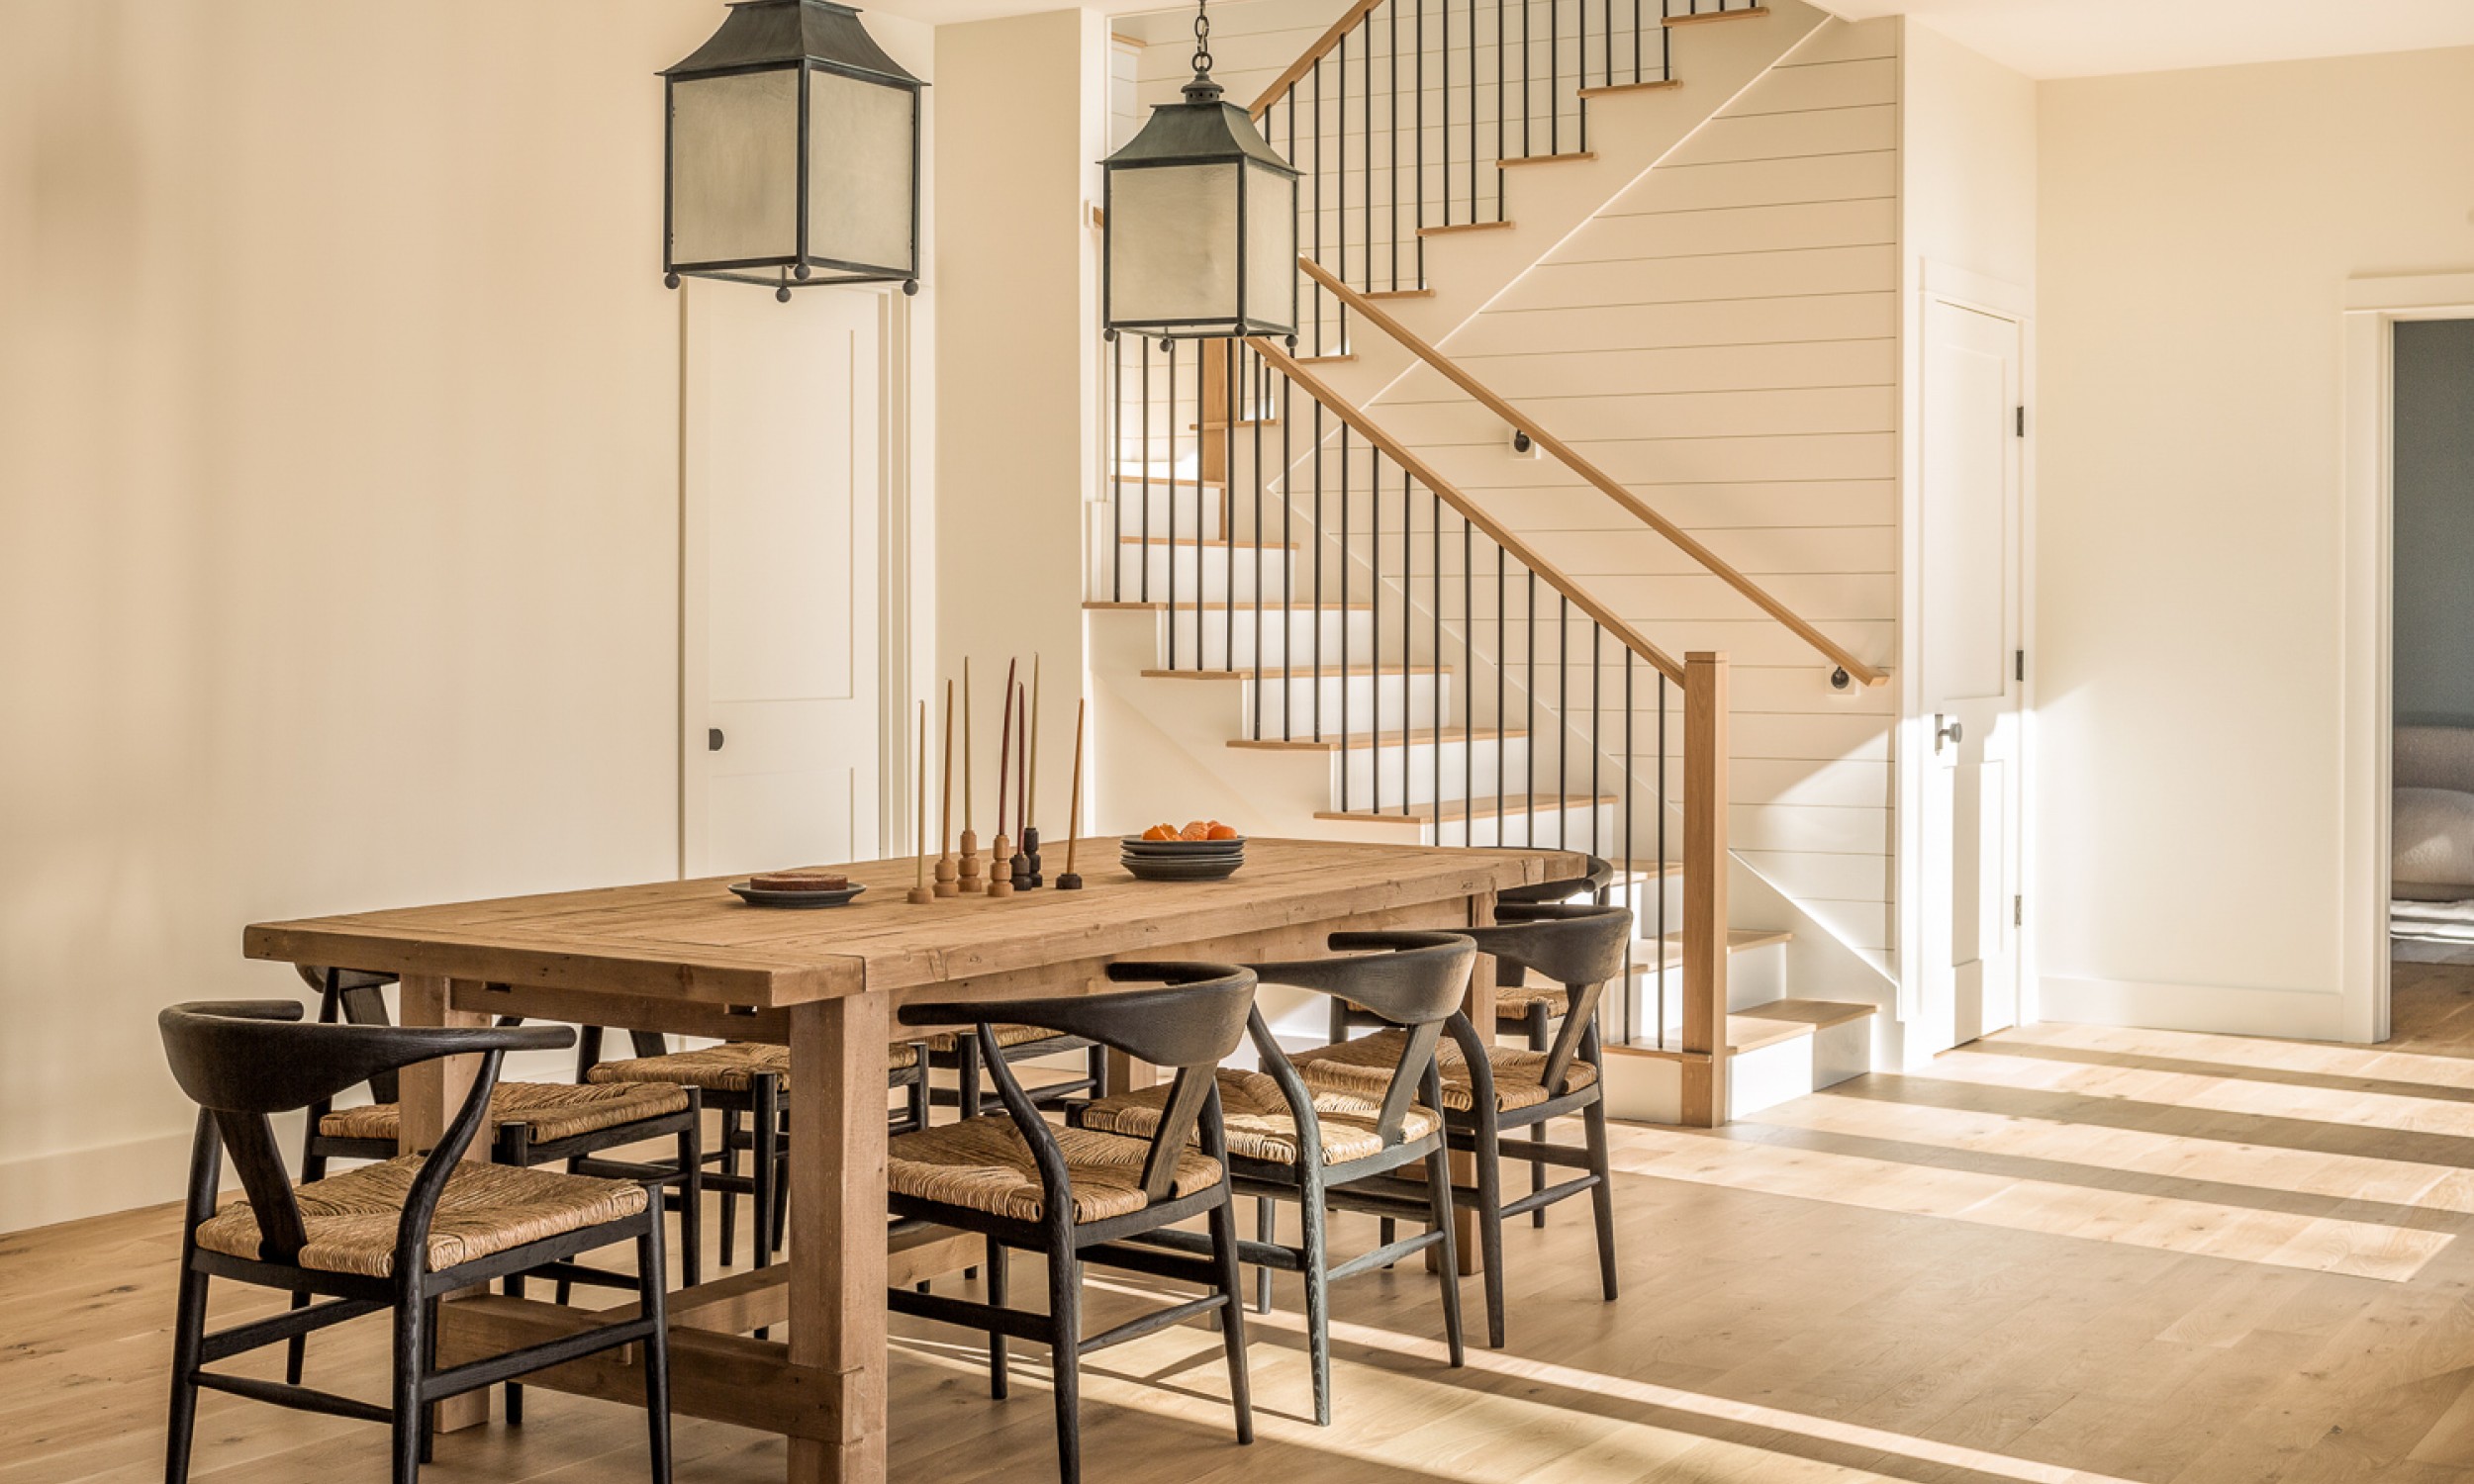 White Oak Floors, Custom Stair, Natural Light